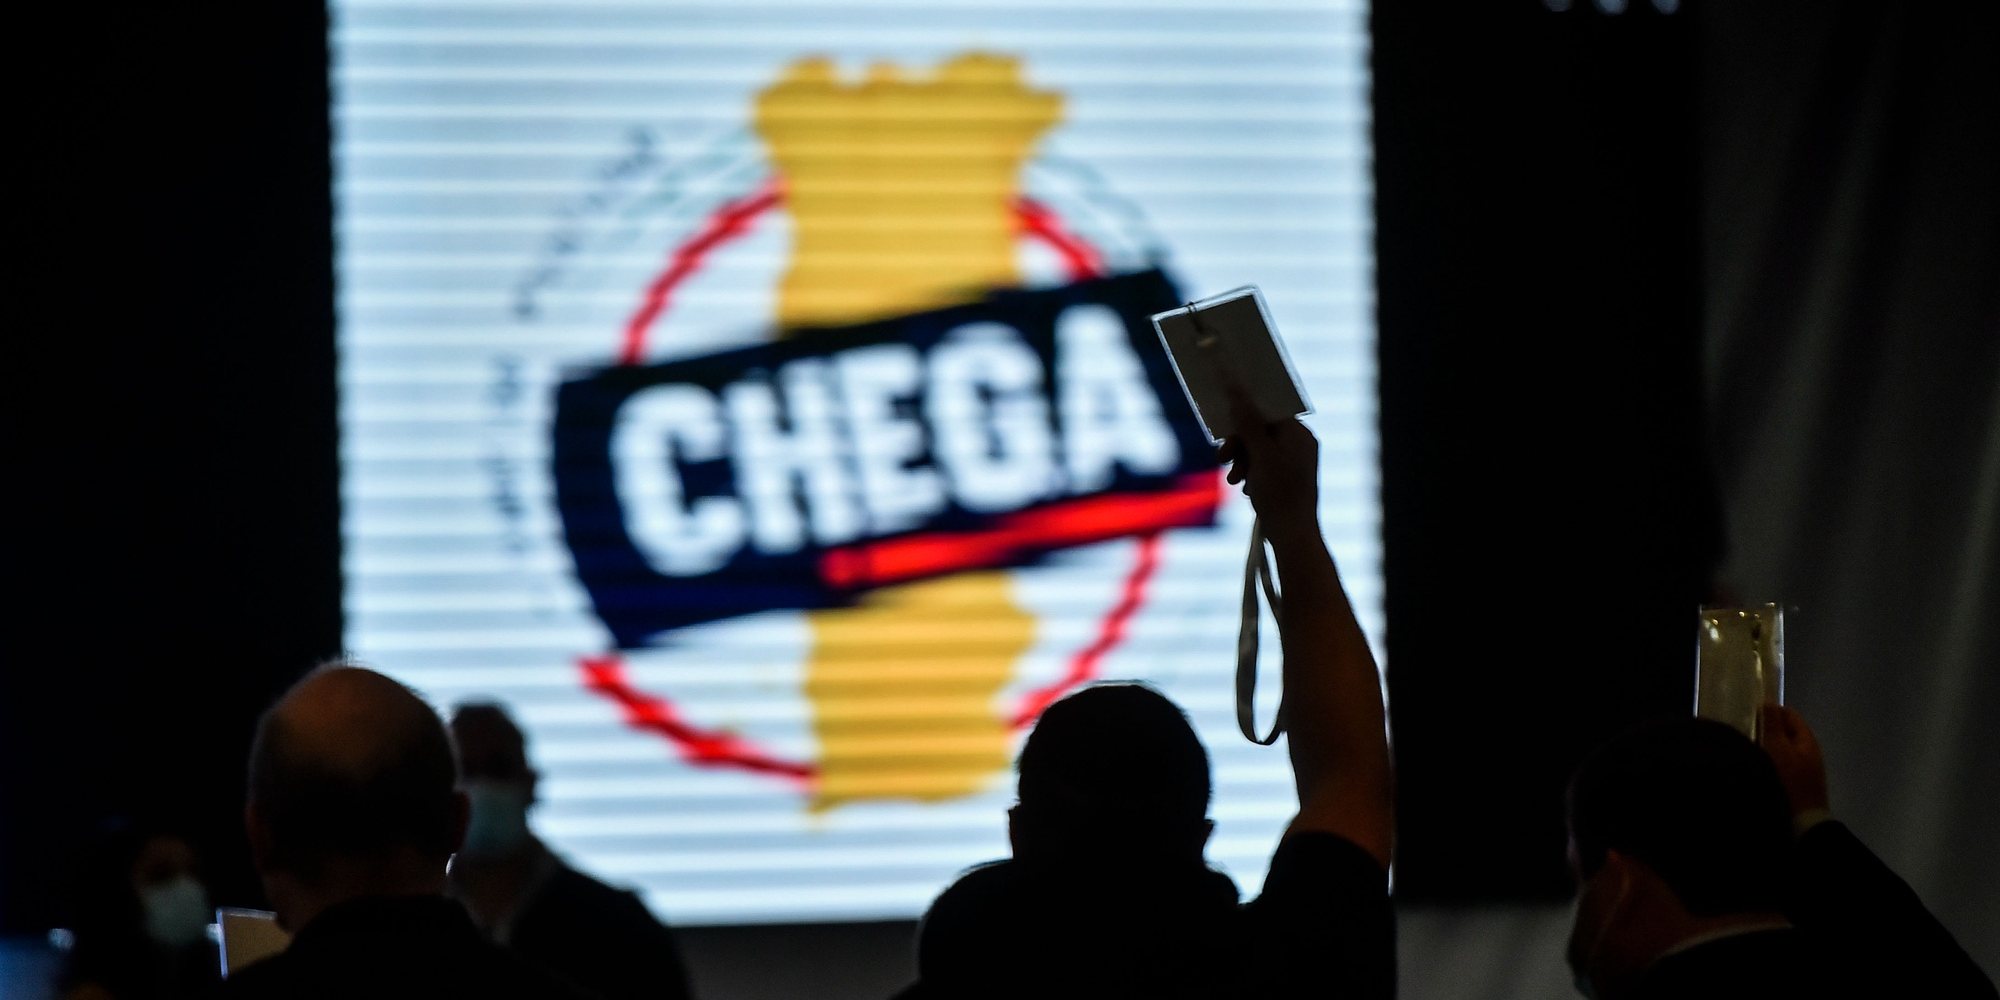 Apresentação e votação das moções estatutárias do partido CHEGA, durante o IV Congresso Nacional, em Viseu, 27 de Novembro de 2021. NUNO ANDRÉ FERREIRA/LUSA